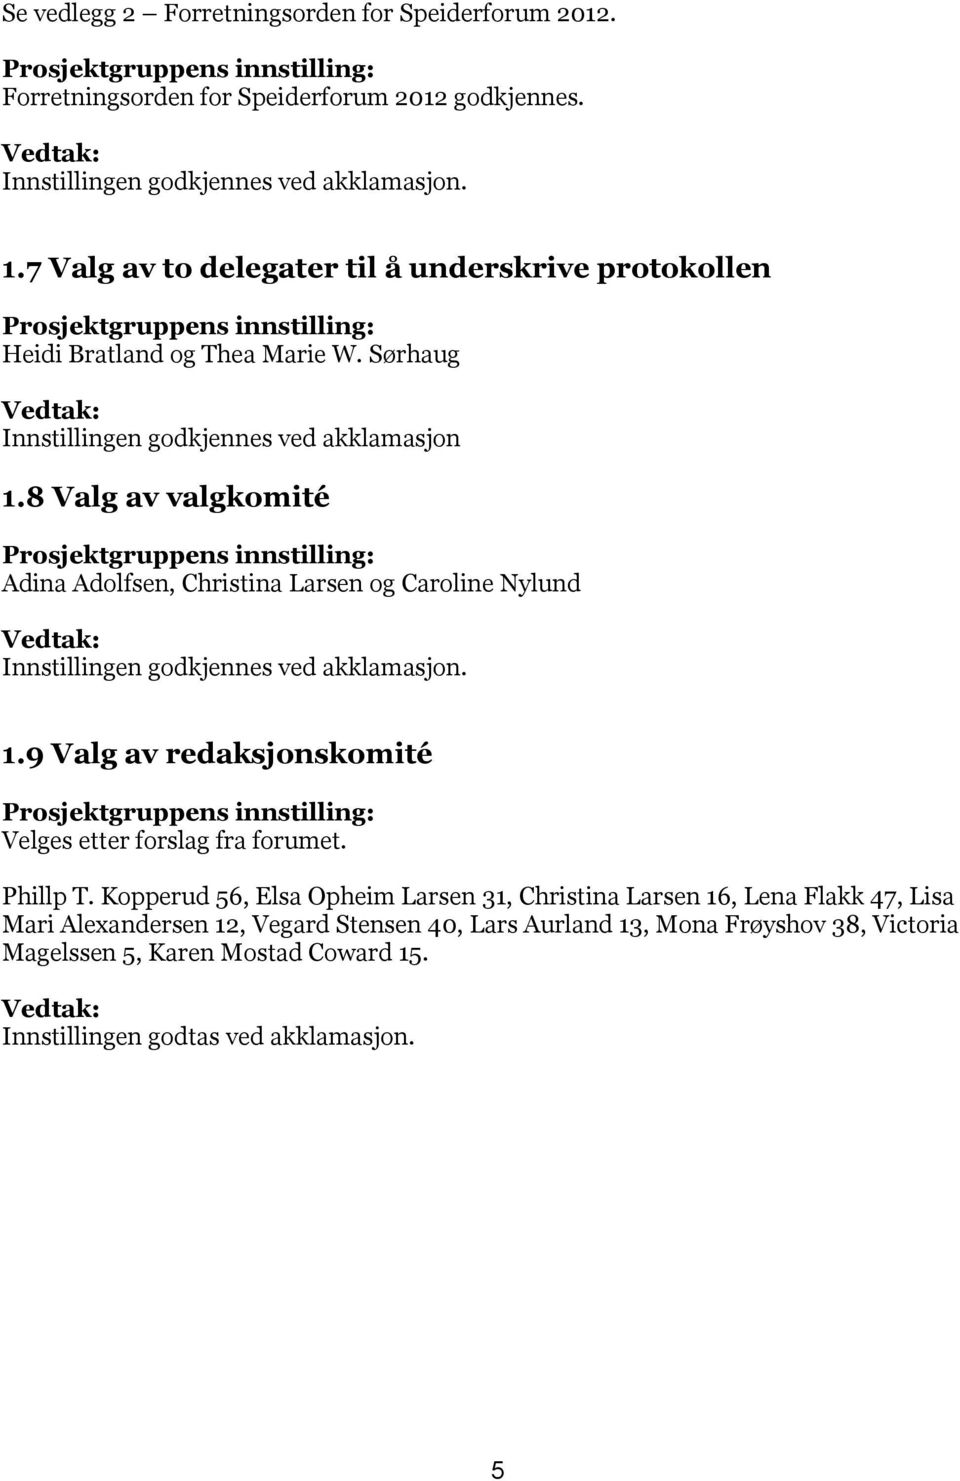 8 Valg av valgkomité Prosjektgruppens innstilling: Adina Adolfsen, Christina Larsen og Caroline Nylund Innstillingen godkjennes ved akklamasjon. 1.